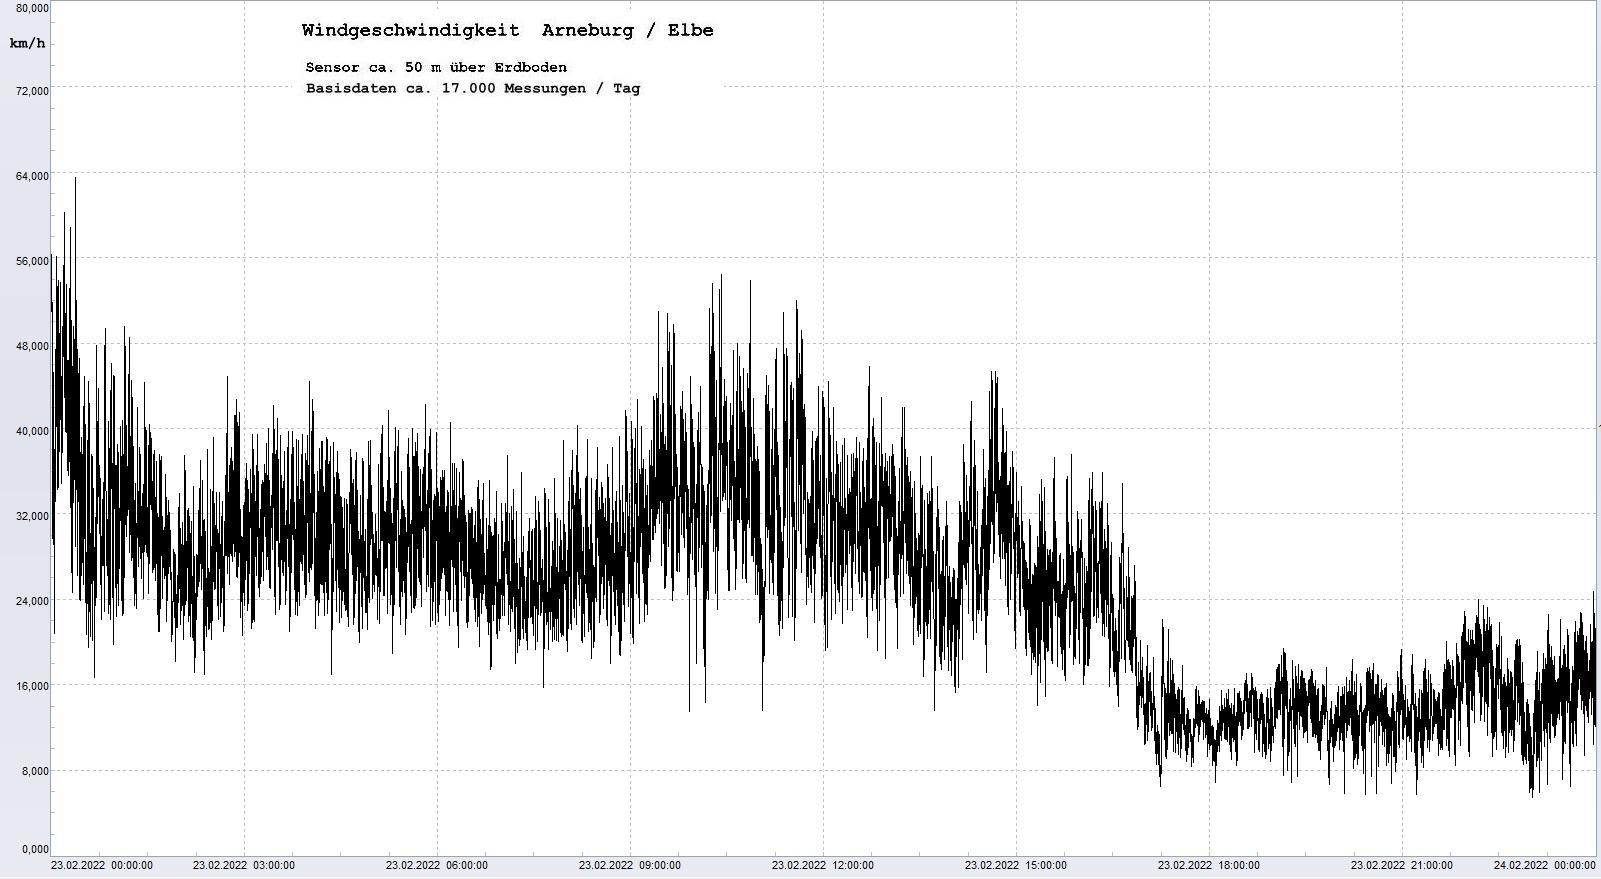 Arneburg Tages-Diagramm Winddaten, 23.02.2022
  Diagramm, Sensor auf Gebude, ca. 50 m ber Erdboden, Basis: 5s-Aufzeichnung